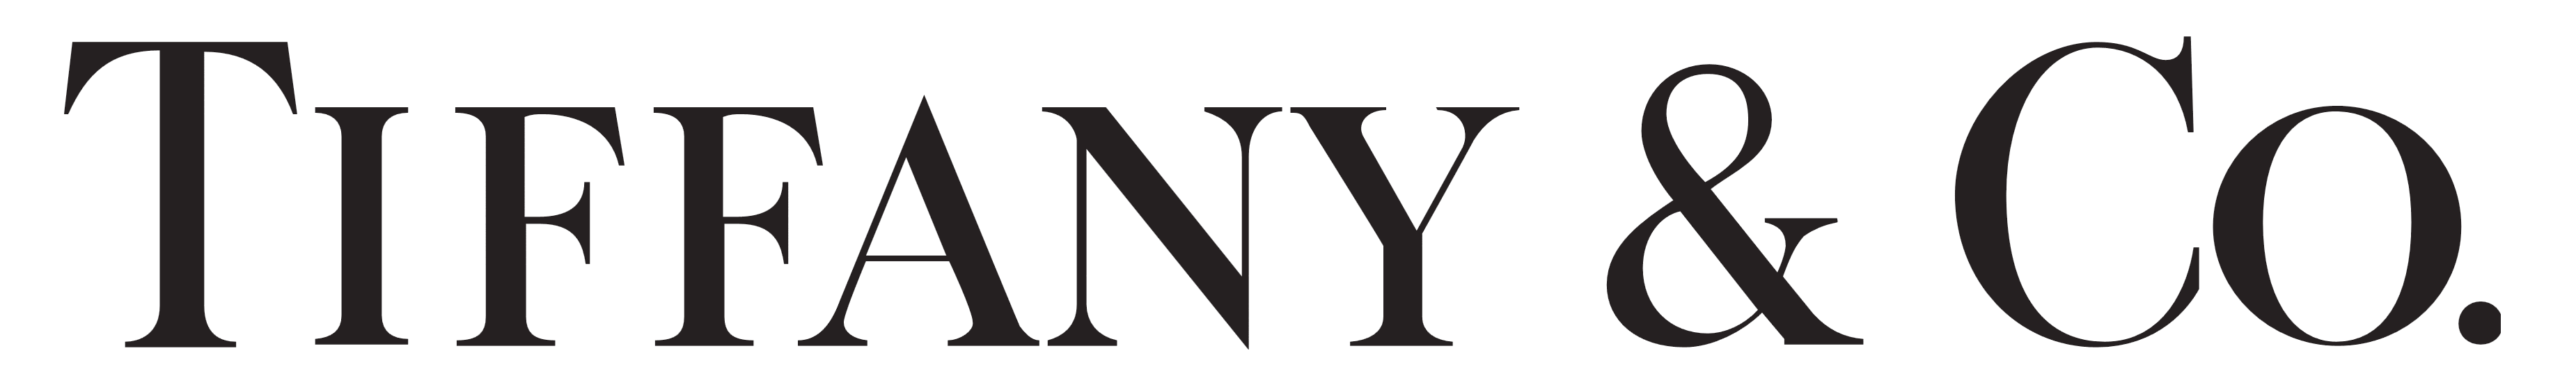 Tiffany & Co logo, logotype